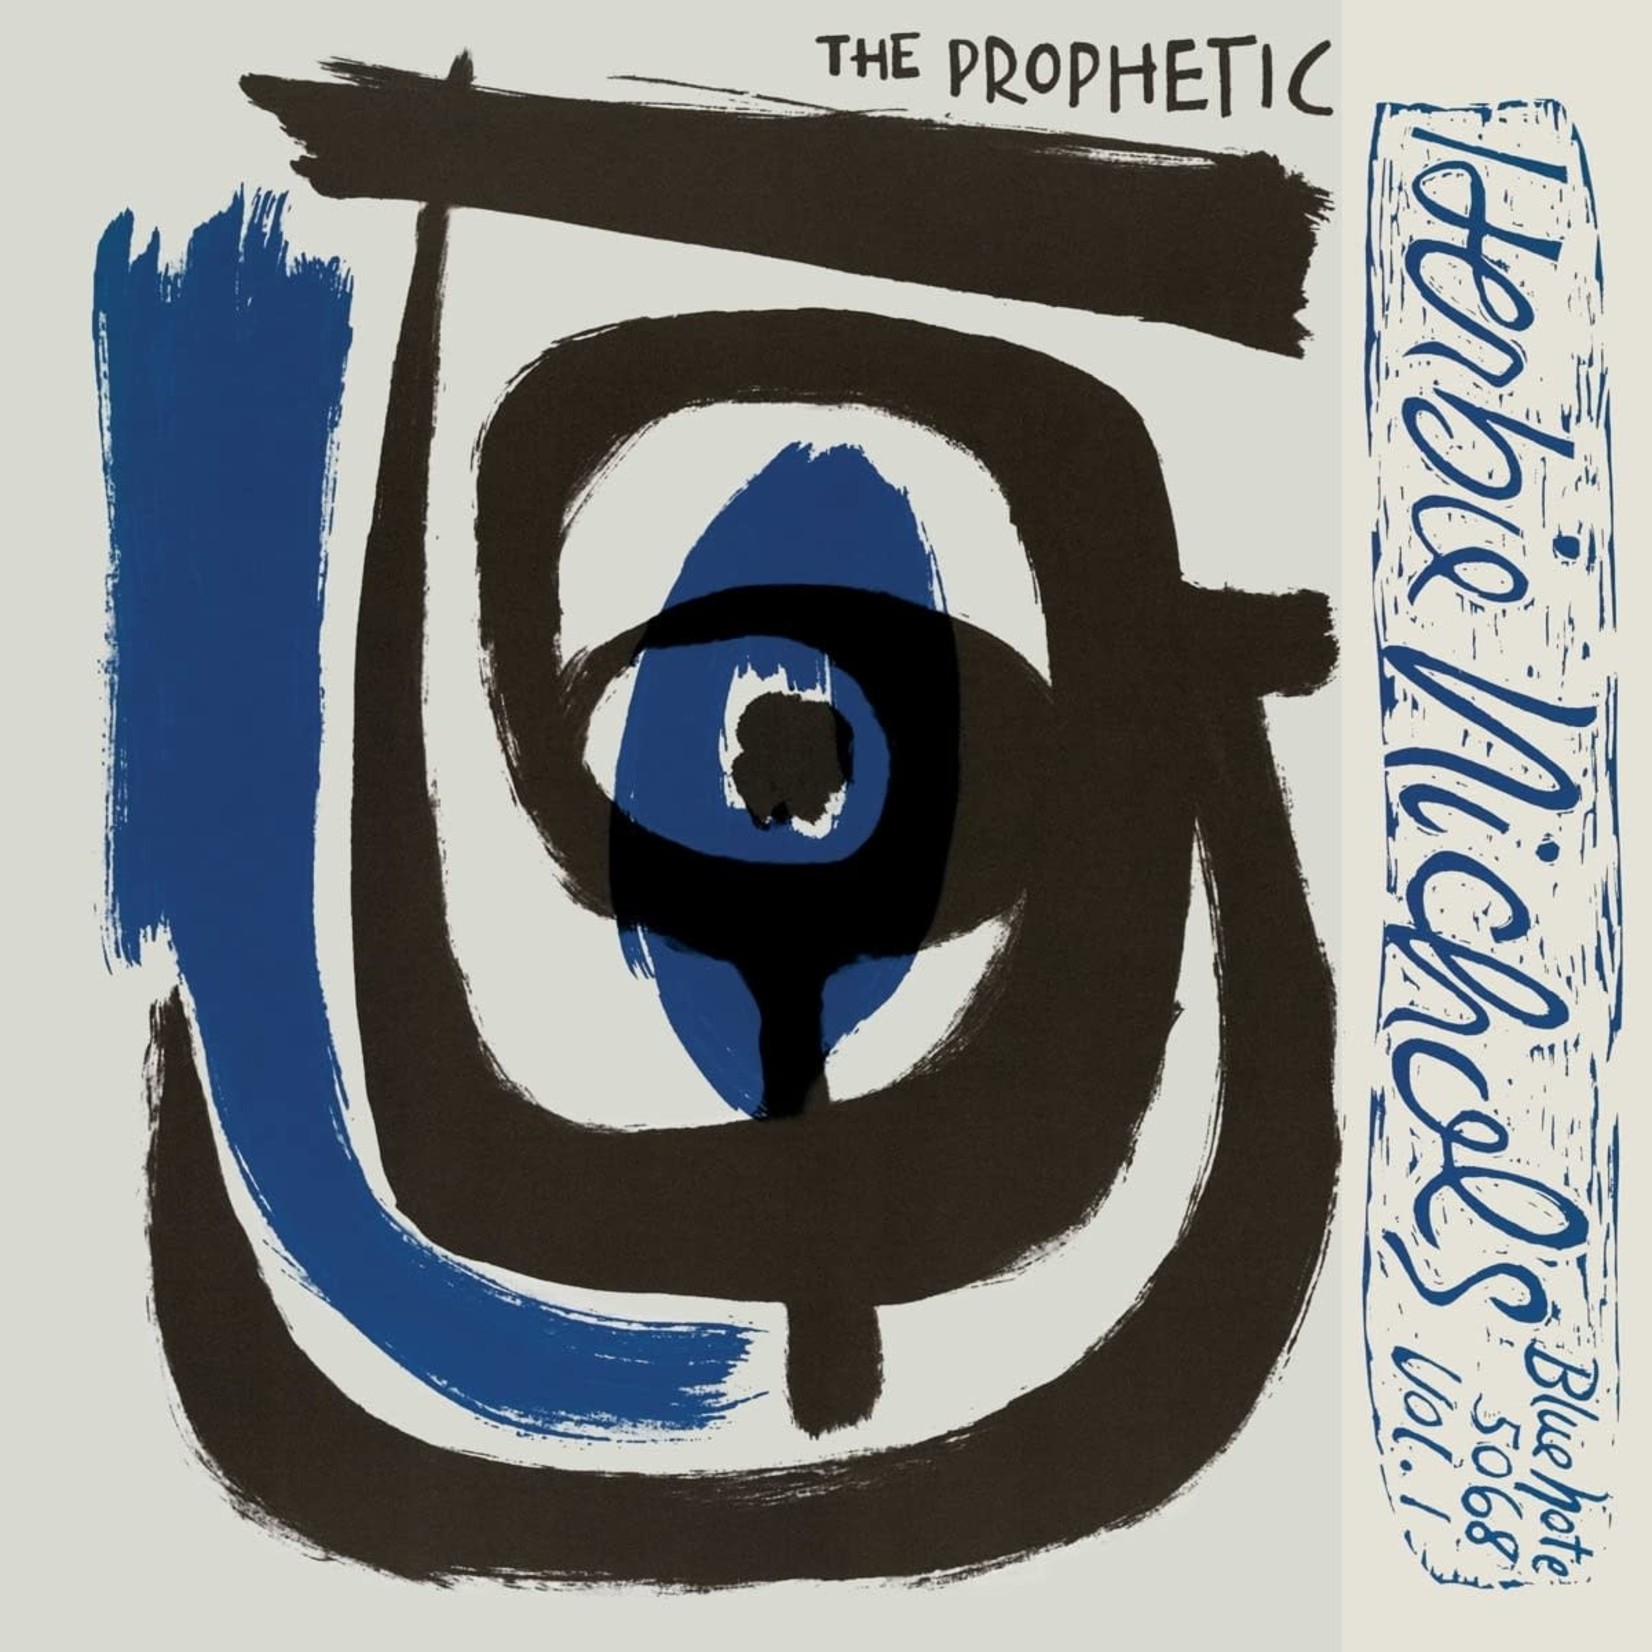 [New] Nichols, Herbie: The Prophetic Herbie Nichols Vol.1&2 (Blue Note Classic Vinyl series) [BLUE NOTE]